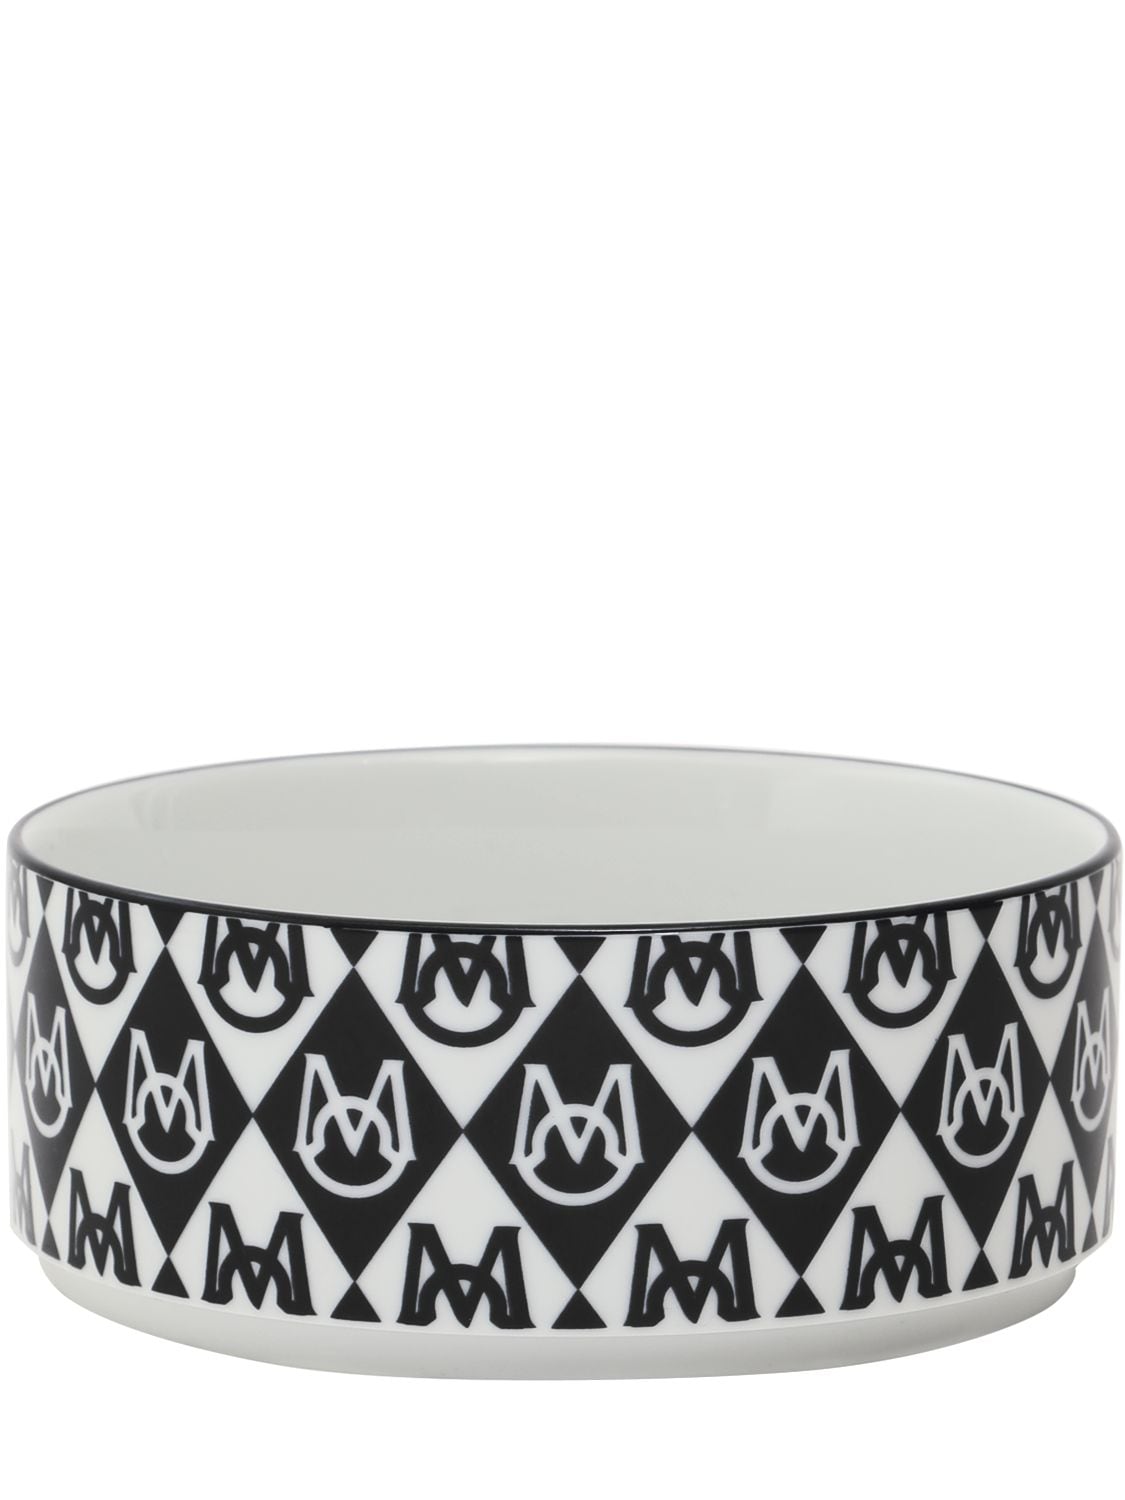 Image of Moncler X Poldo Monogram Dog Bowl